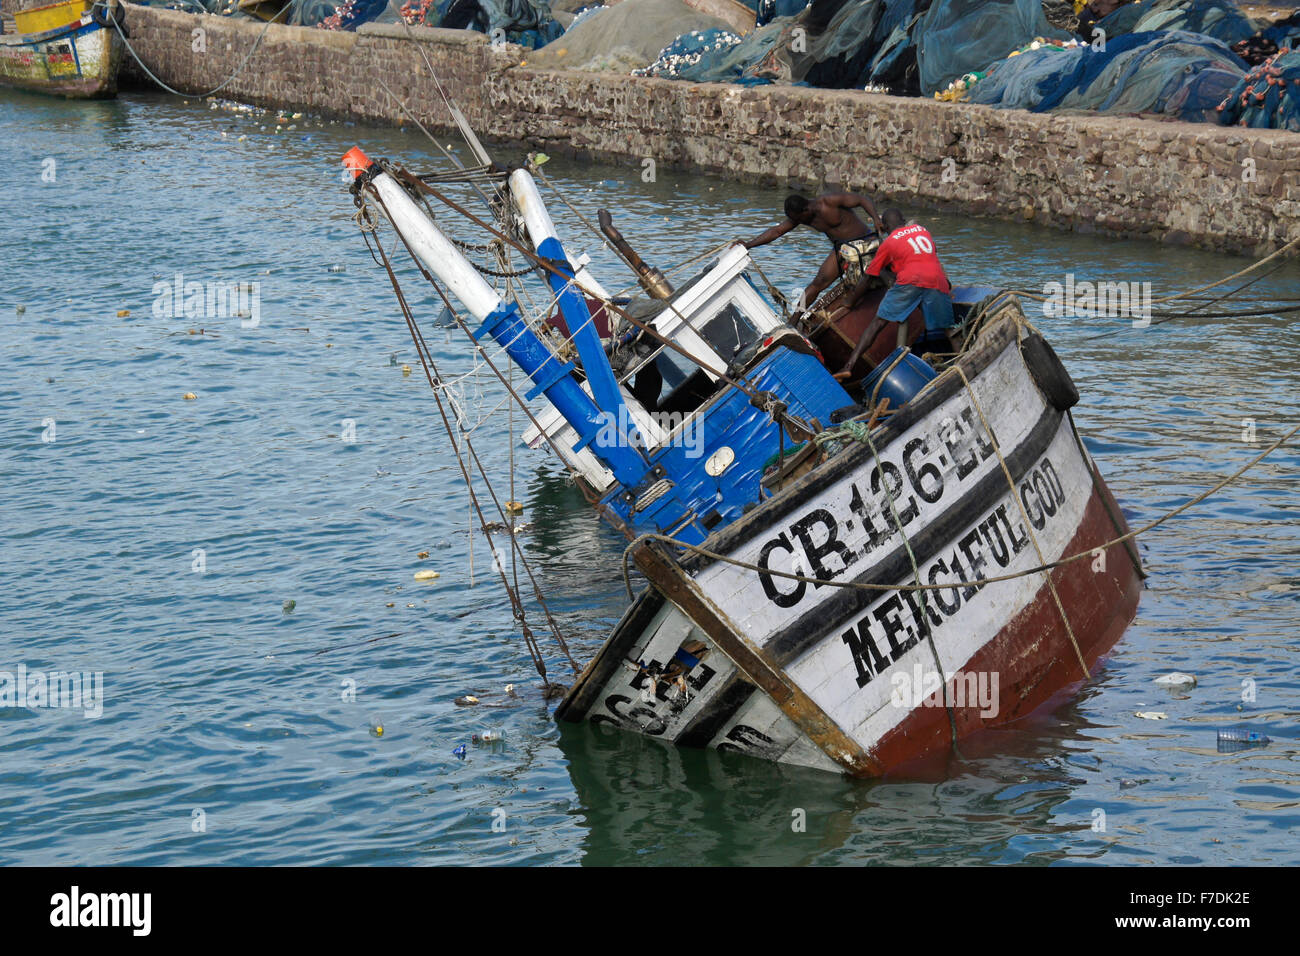 Fishing boat sinking in harbor, Cape Coast, Ghana Stock Photo